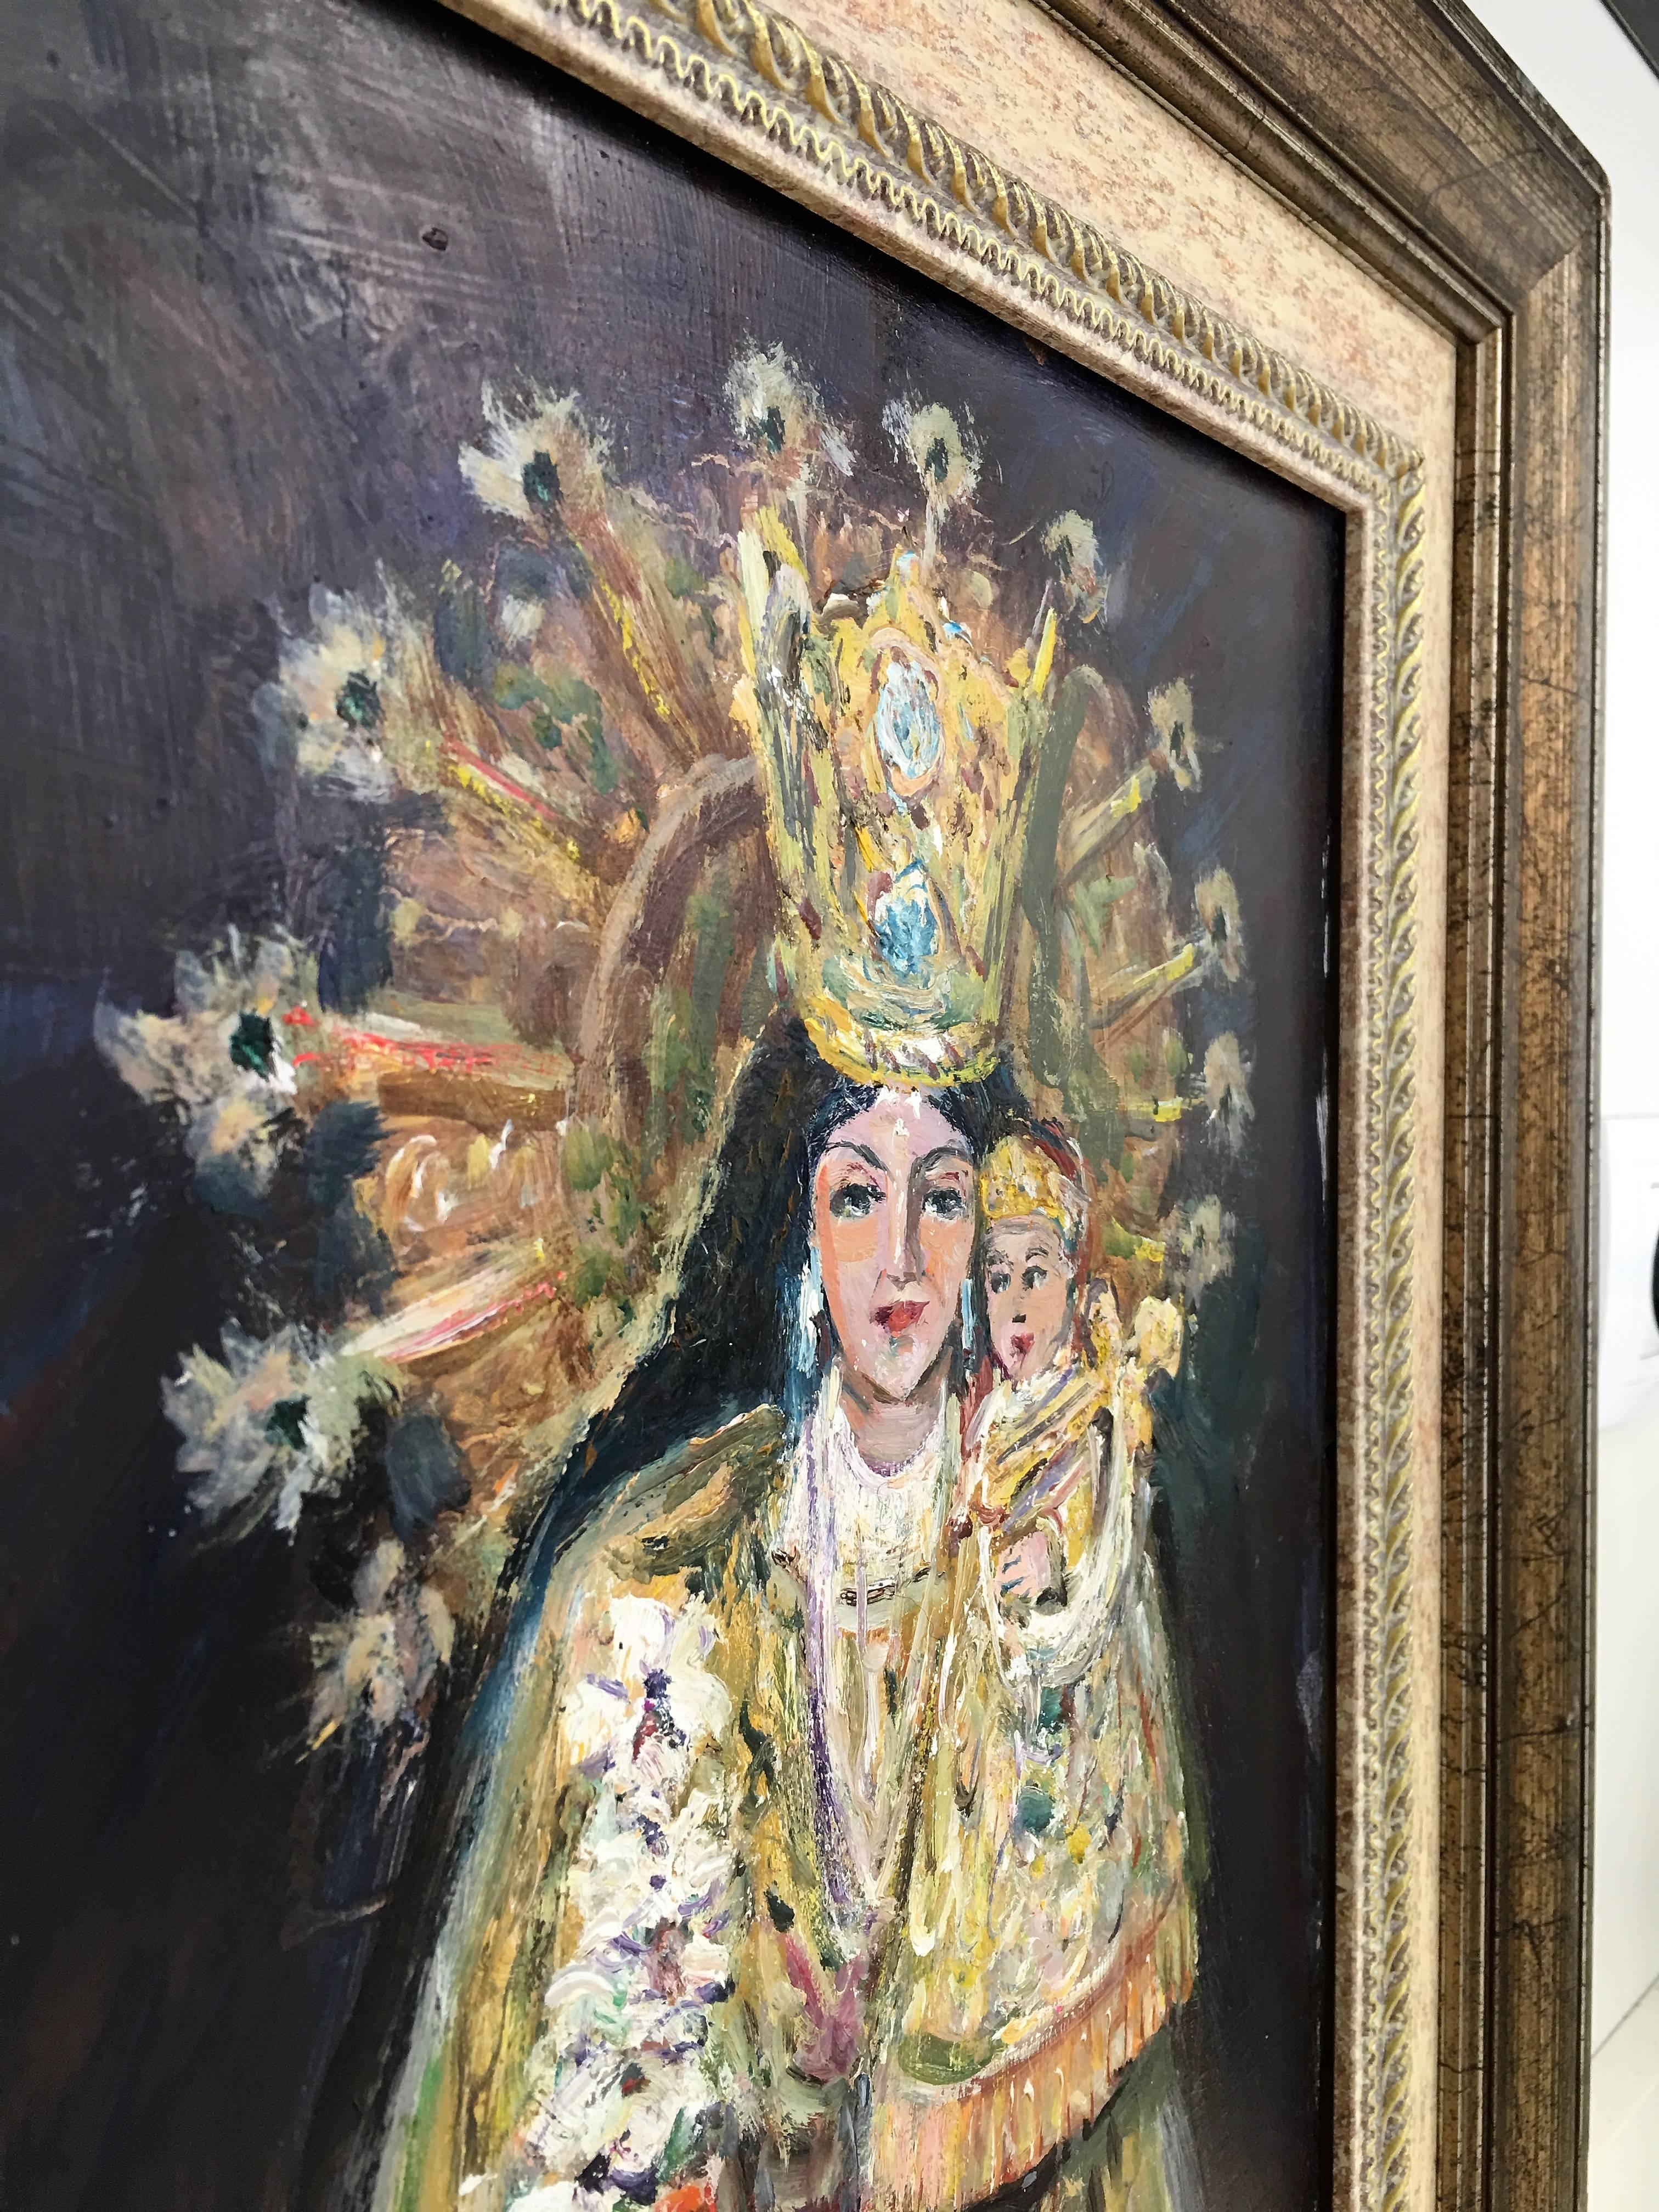 ölgemälde der Madonna mit Kind aus dem 20. Jahrhundert von Arnedo Linares, Spanien (1925-2011)
Dieses Öl stellt den 